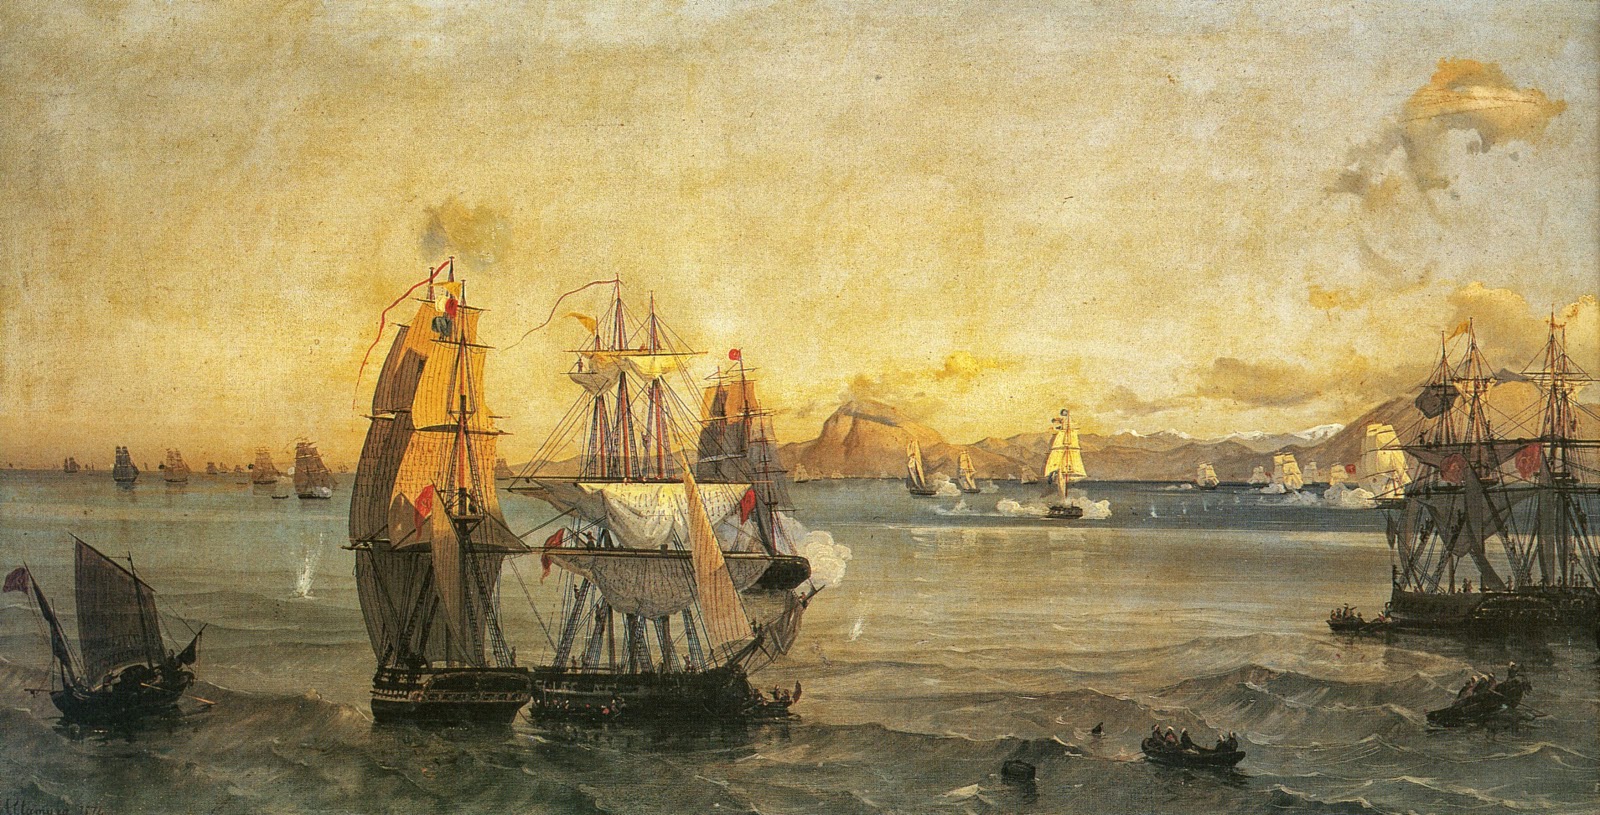 Ναυμαχία της Πάτρας: Σαν σήμερα το 1822 ο Ανδρέας Μιαούλης κατατρόπωσε τον τουρκικό στόλο